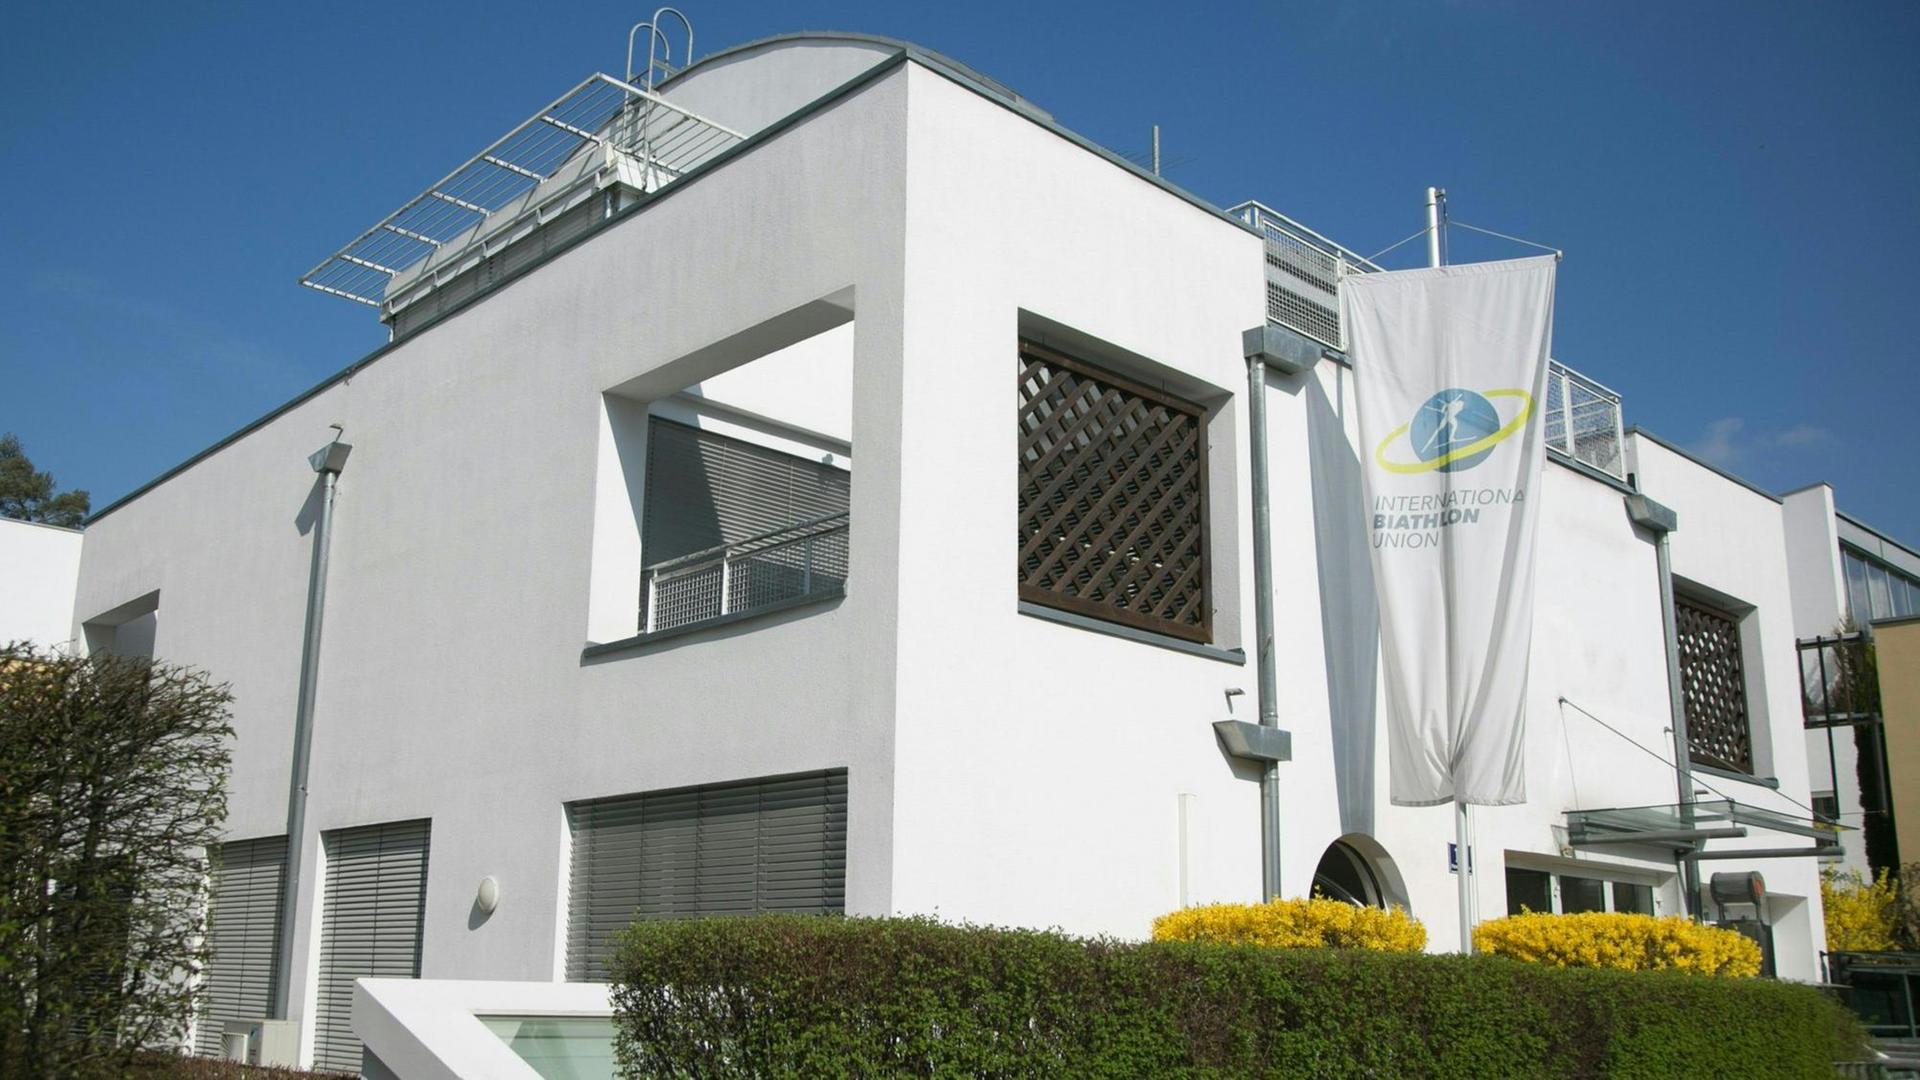 Ds Bild zeigt den Sitz der Internationalen Biathlon Union (IBU) im österreichischen Salzburg. Zu sehen ist eine weiße Fassade hinter einer grünen Hecke.